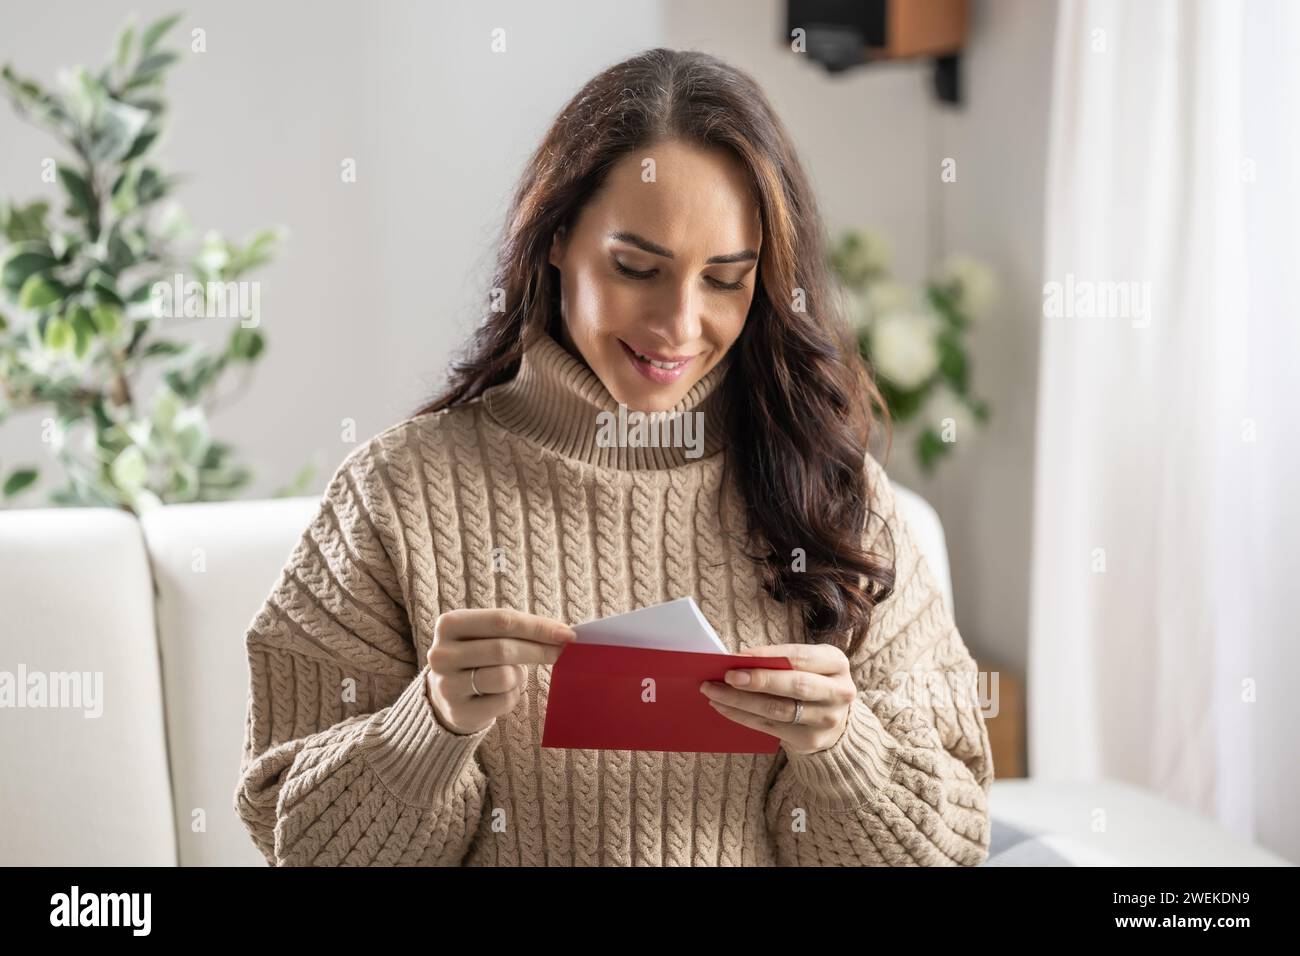 Eine gut aussehende Brünette liest einen Liebesbrief mit einem roten Umschlag, den sie von ihrem Freund erhalten hat. Stockfoto